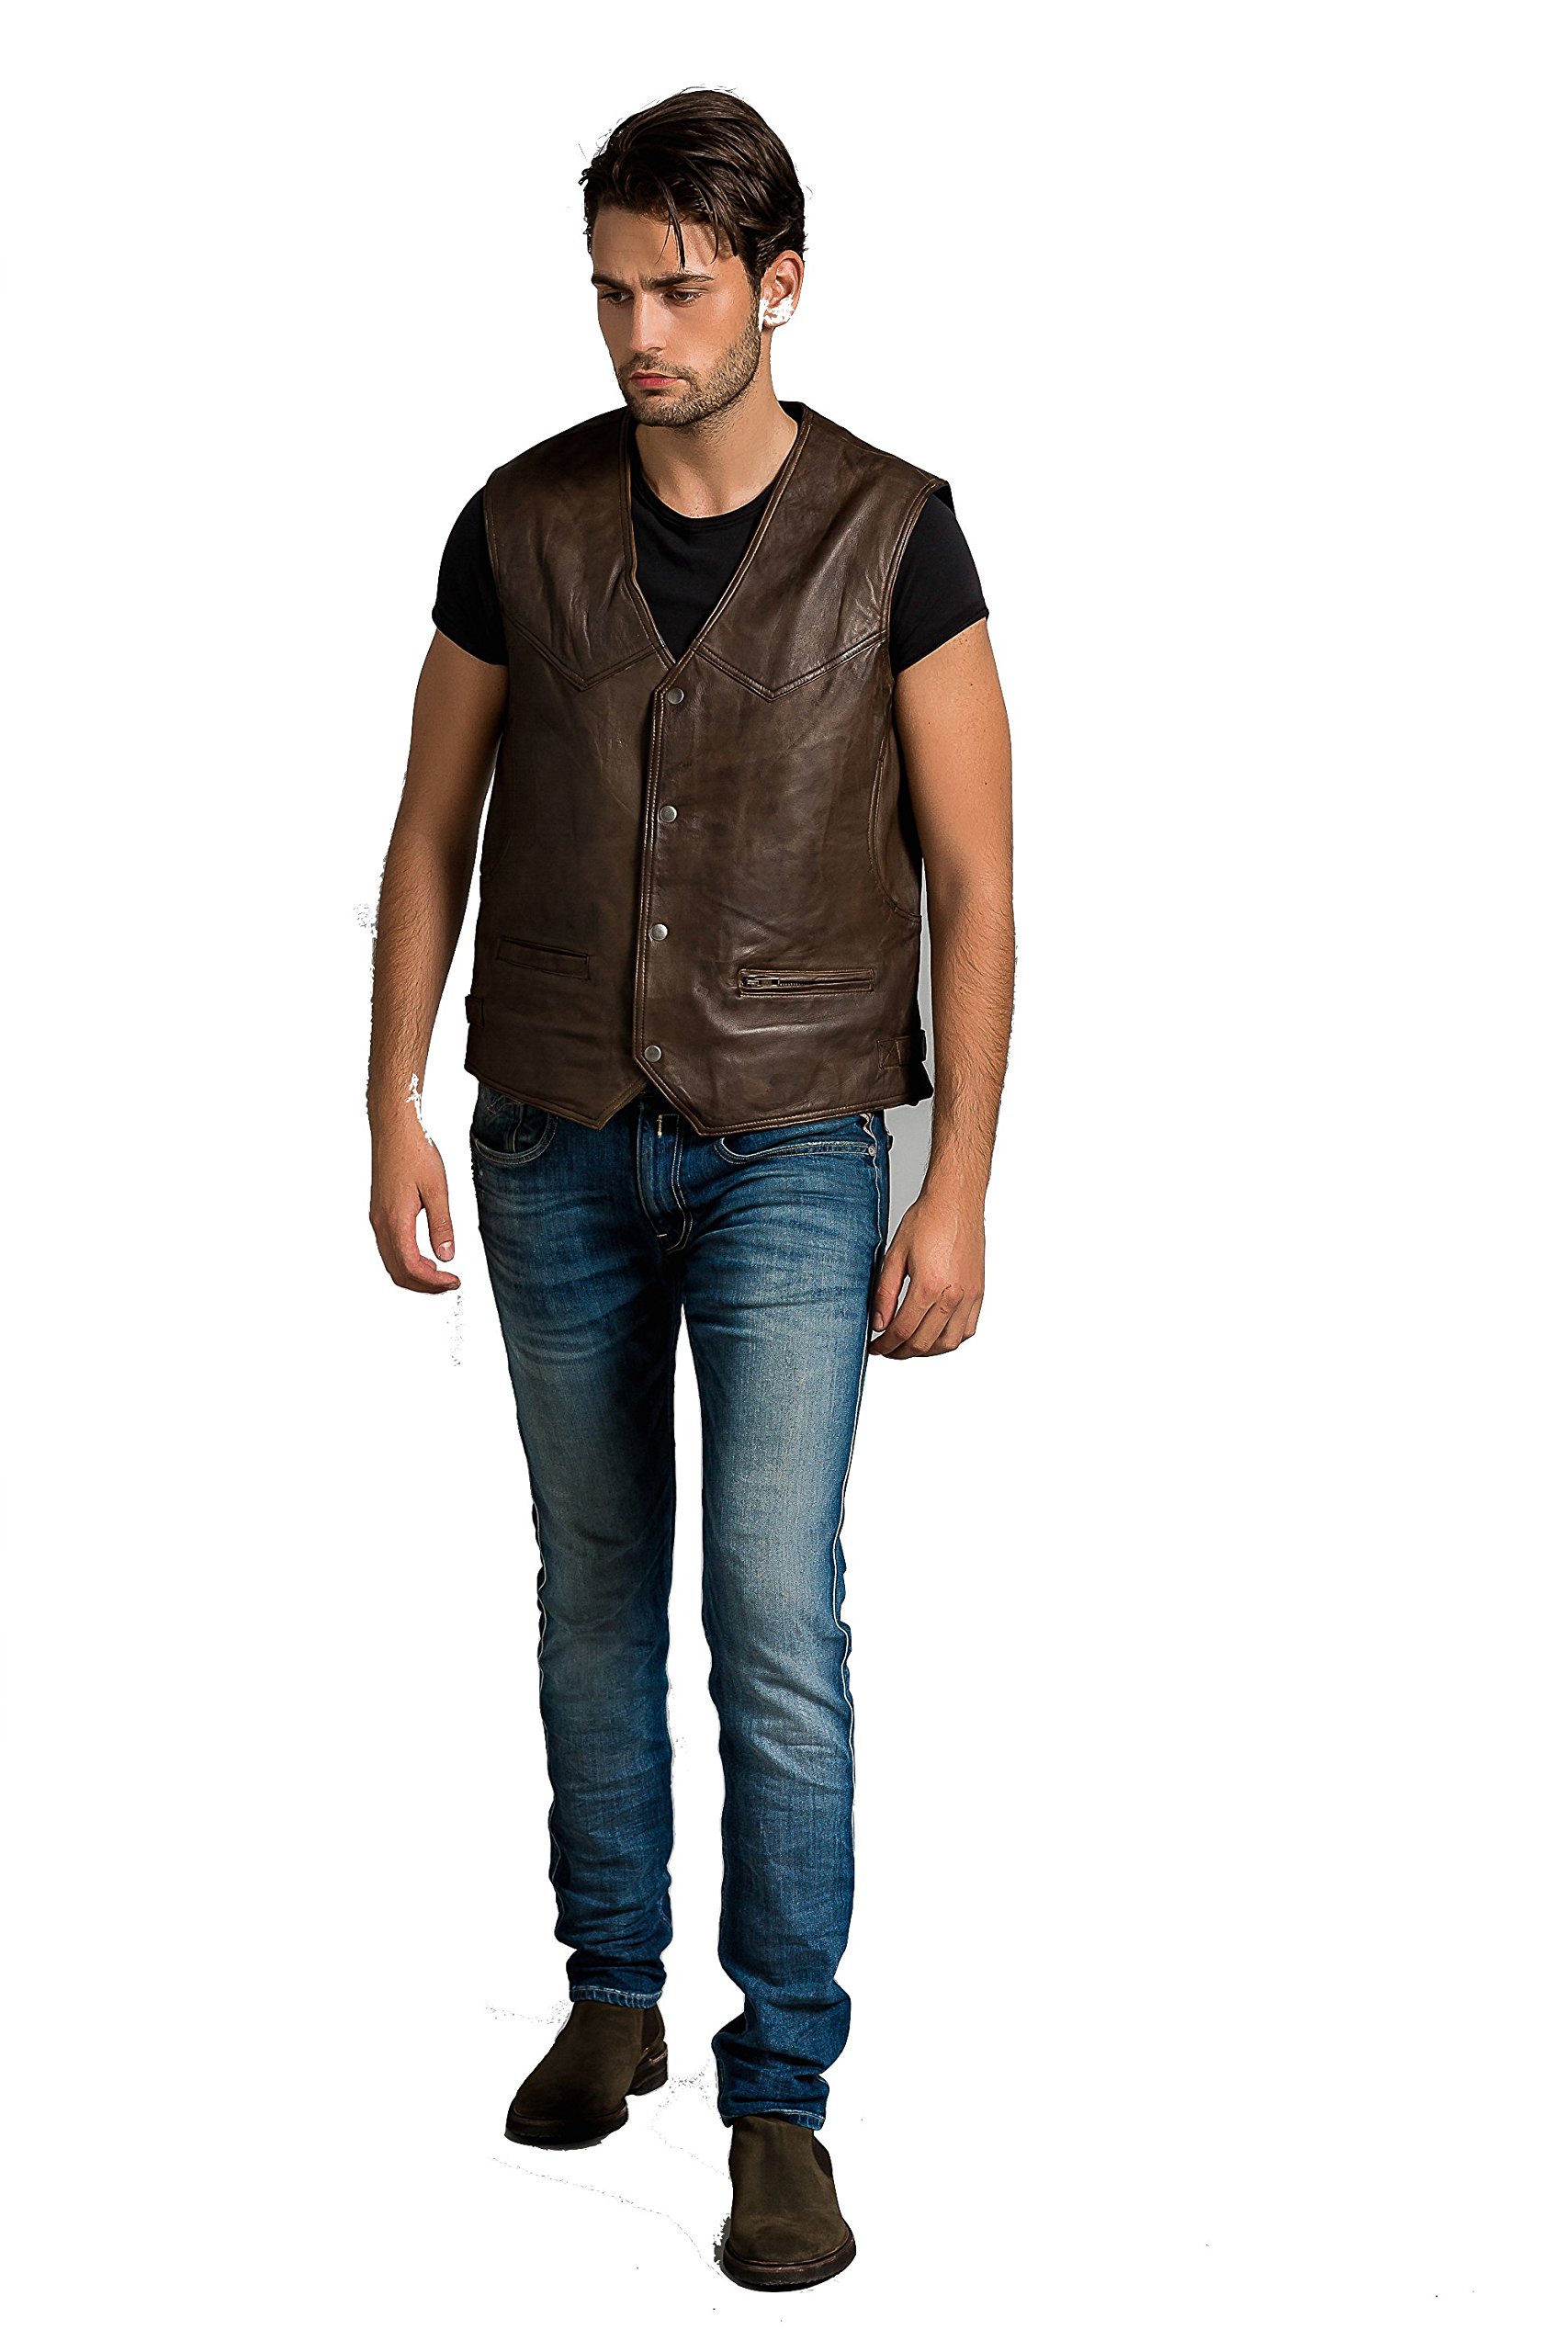 Billy Waistcoat, Ontorio Brown, Size 2XL von Urban Leather